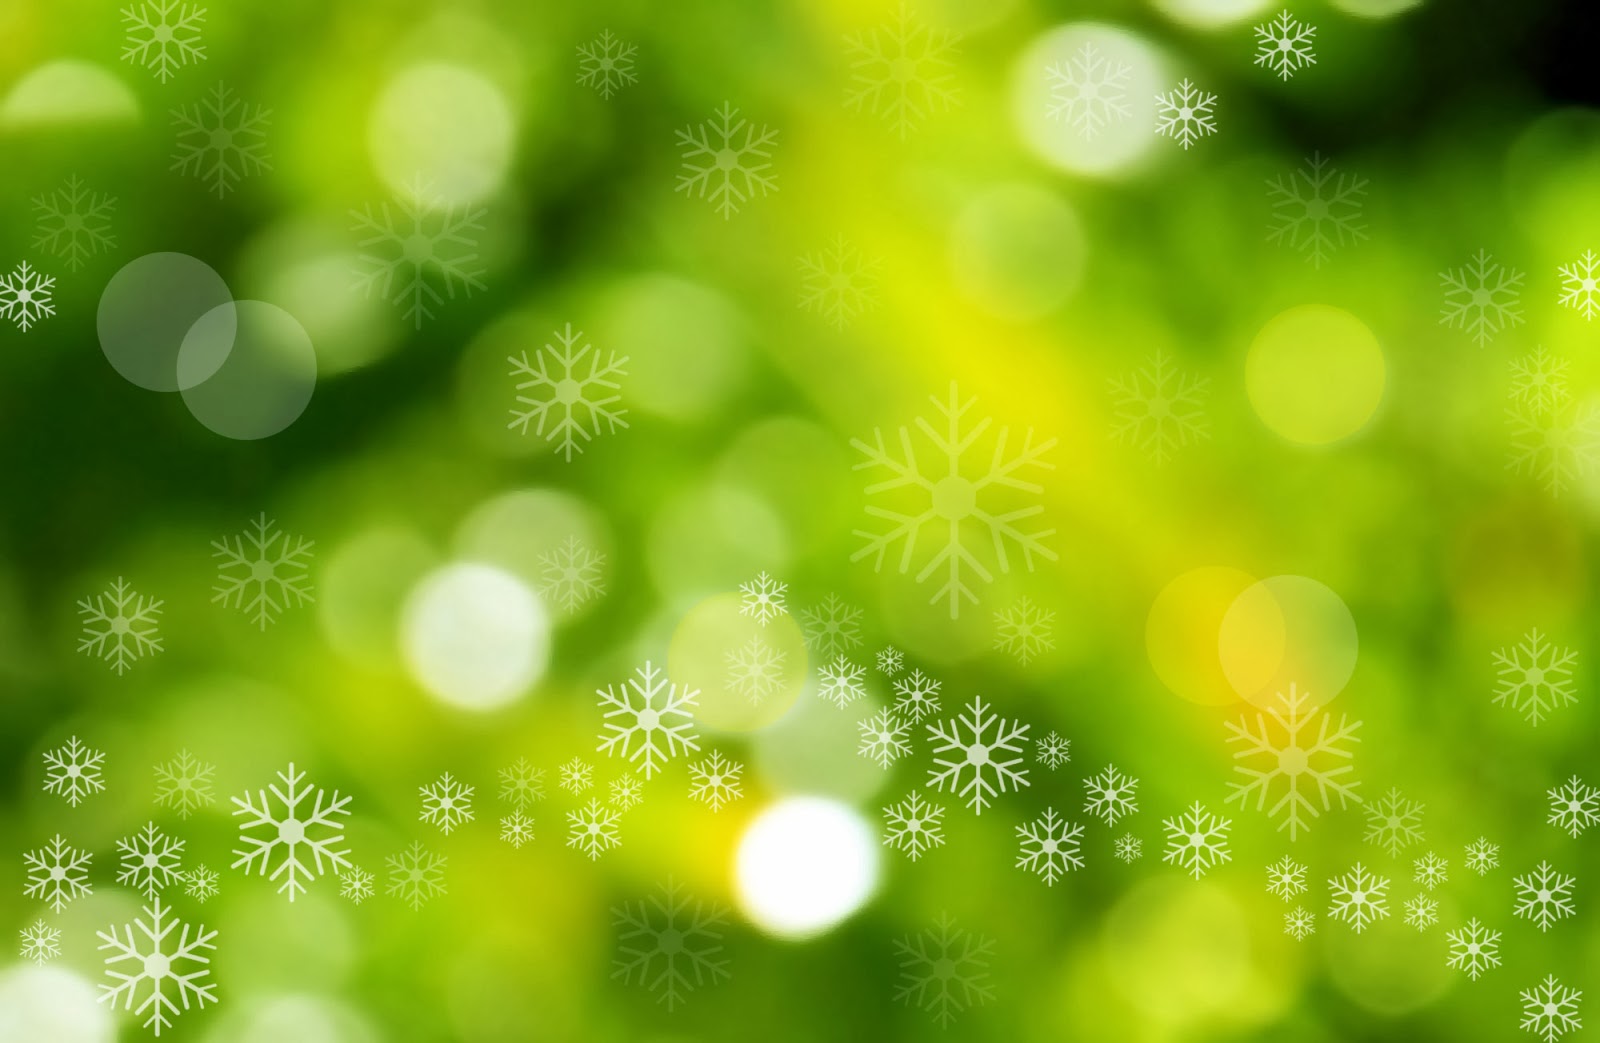 grüne weihnachtstapete,grün,natur,natürliche landschaft,blatt,sonnenlicht